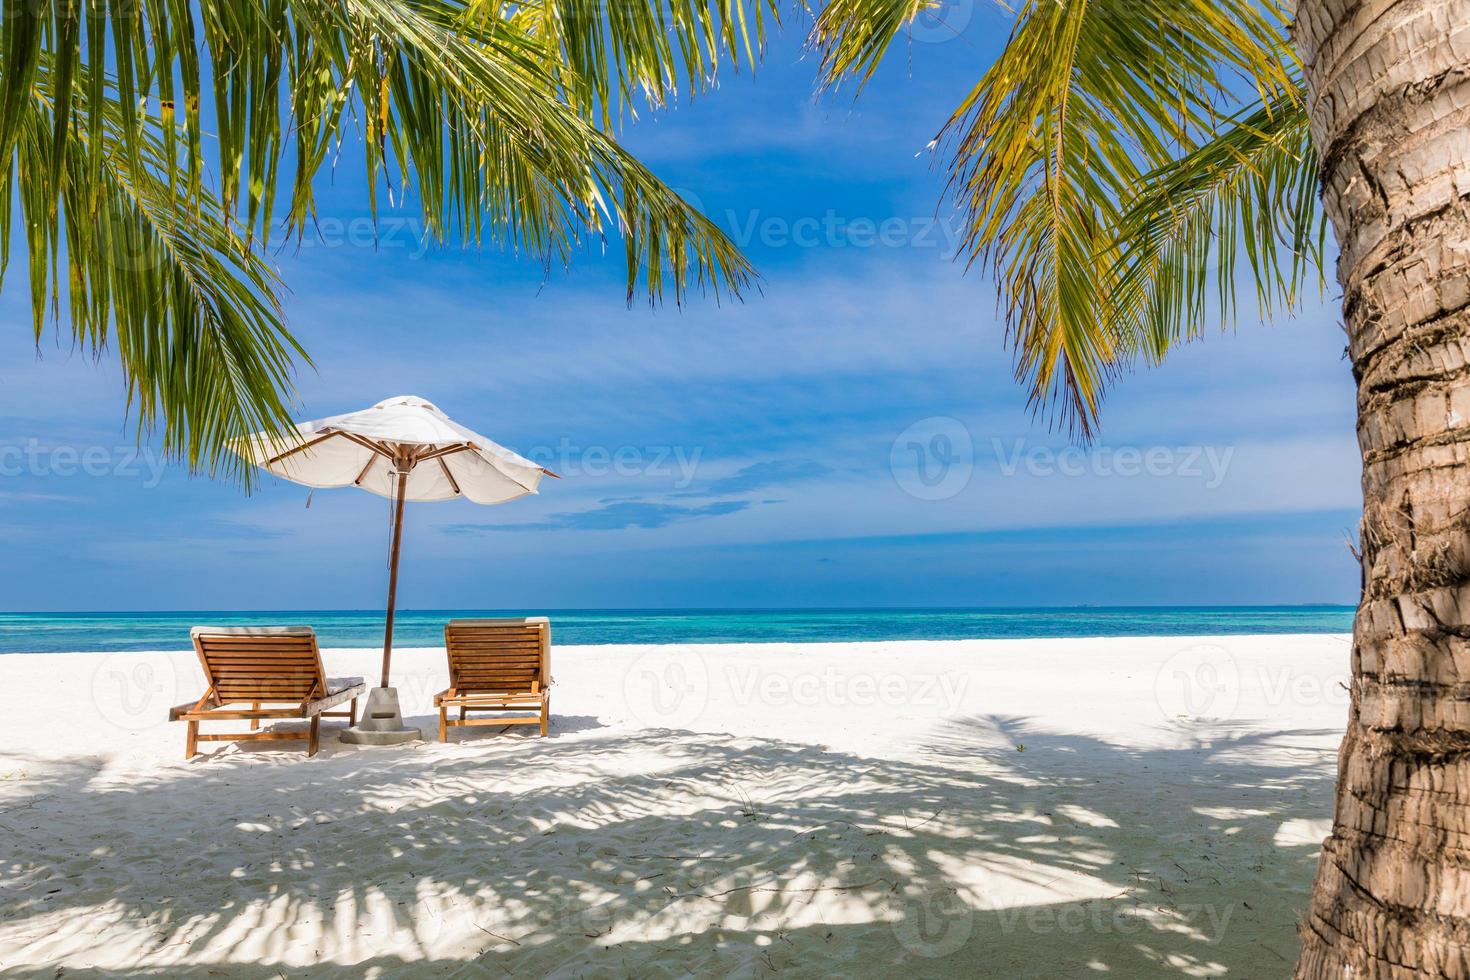 hermosa playa tranquila. sillas en la playa de arena cerca del mar. concepto de vacaciones y vacaciones de verano para el turismo. paisaje tropical inspirador, impulsar el proceso de color. destino de viaje exótico foto